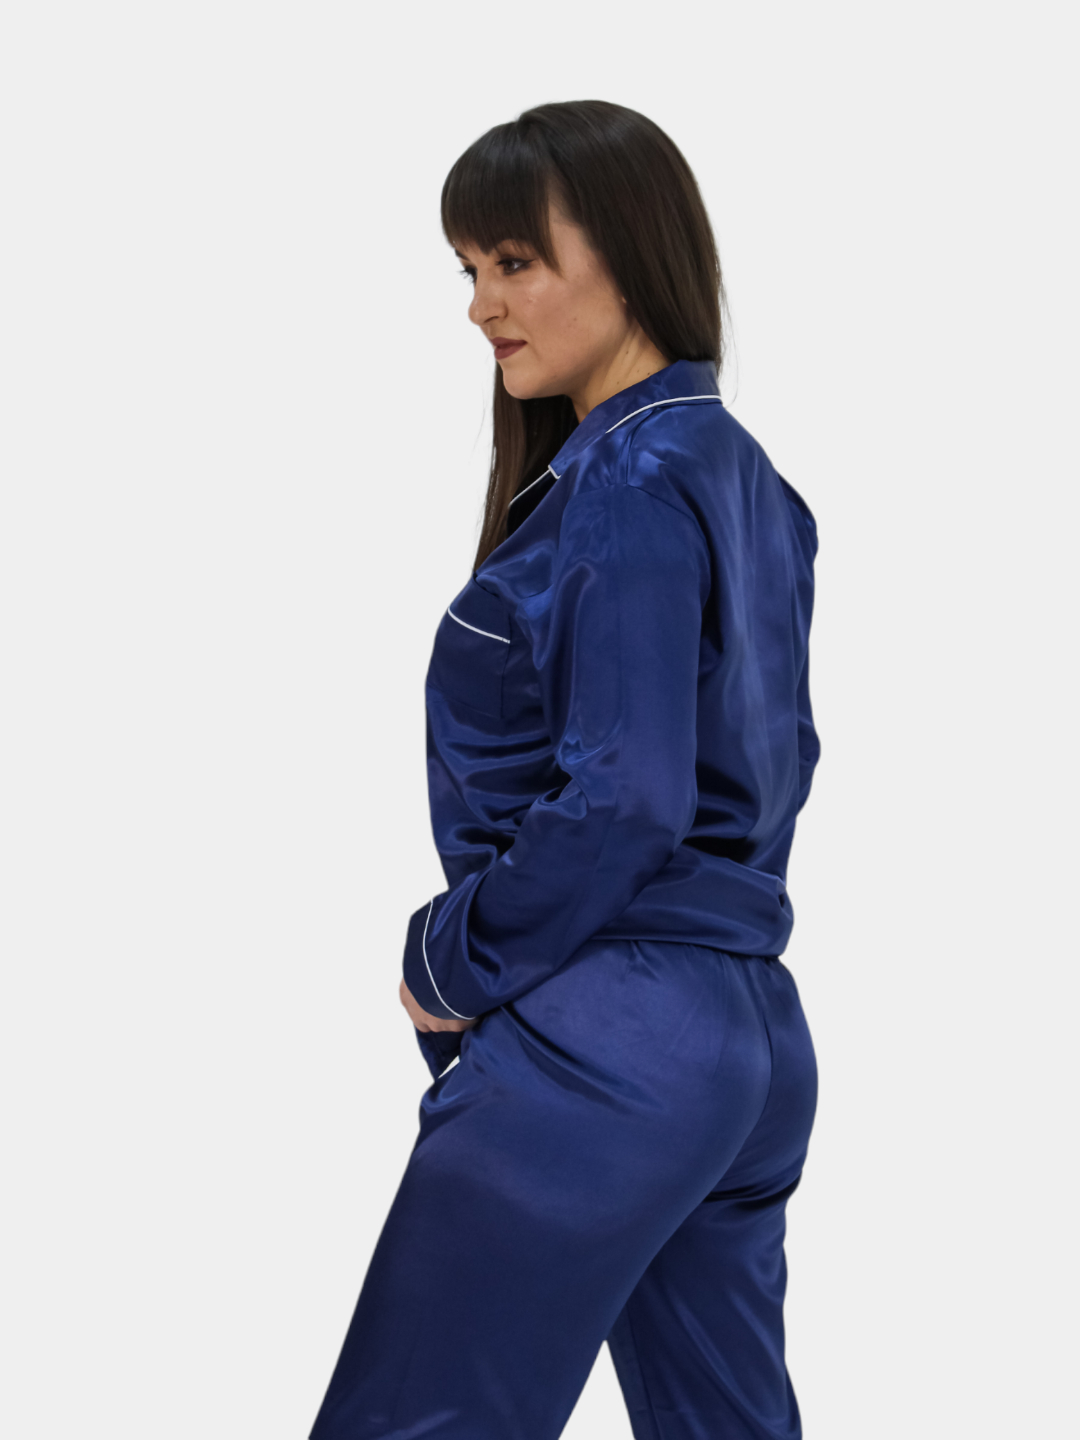 Пижама шелковая женская, атласная, комплект: рубашка, брюки купить по цене800 ₽ в интернет-магазине KazanExpress